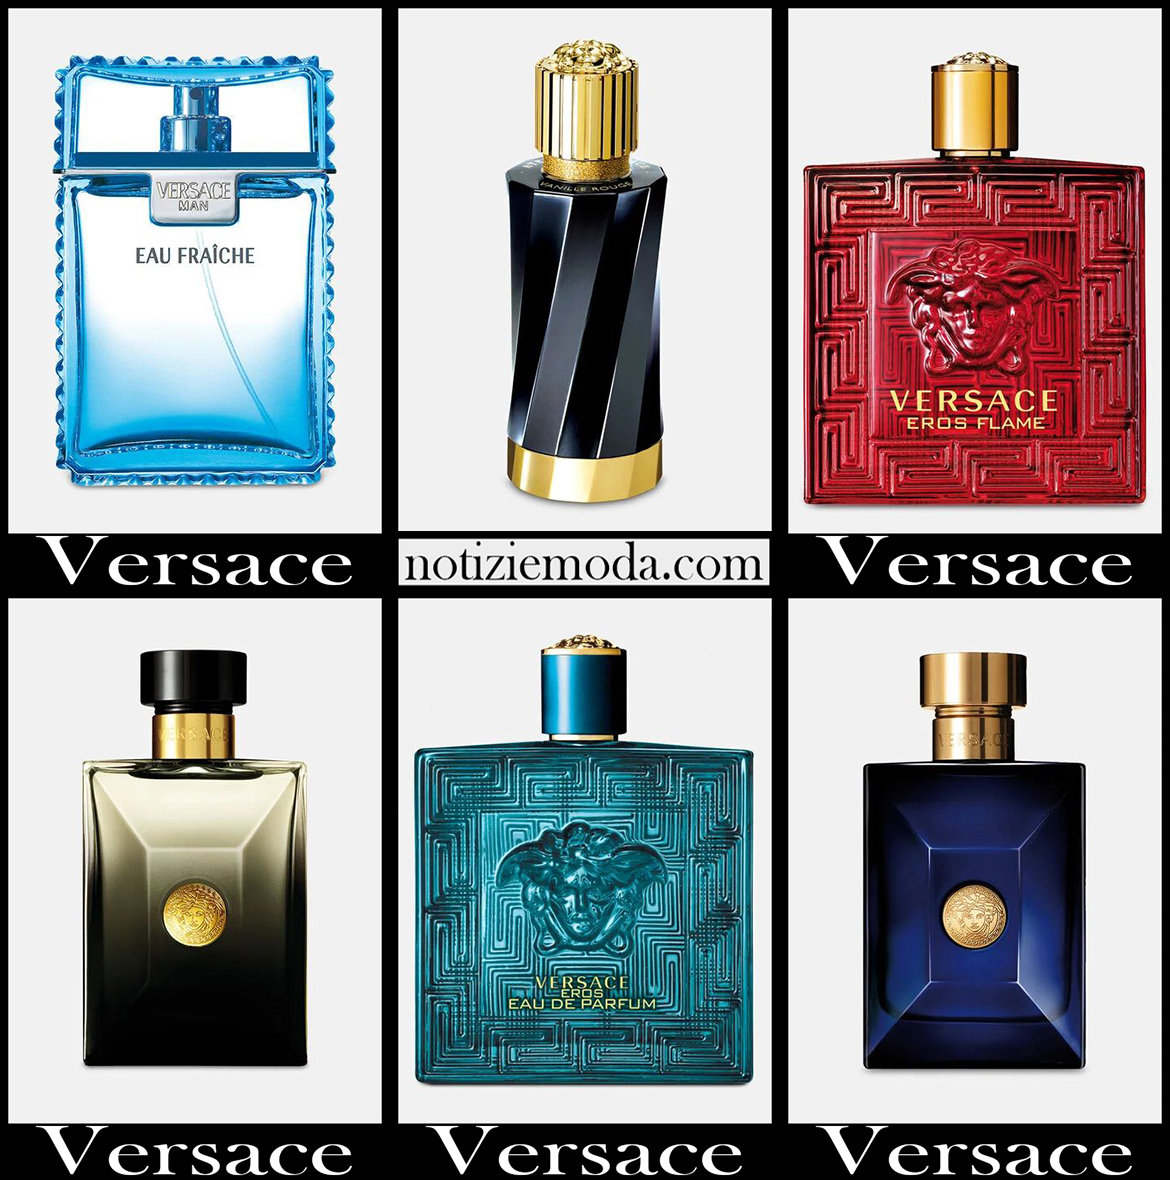 Nuovi arrivi profumi Versace 2021 idee regalo uomo